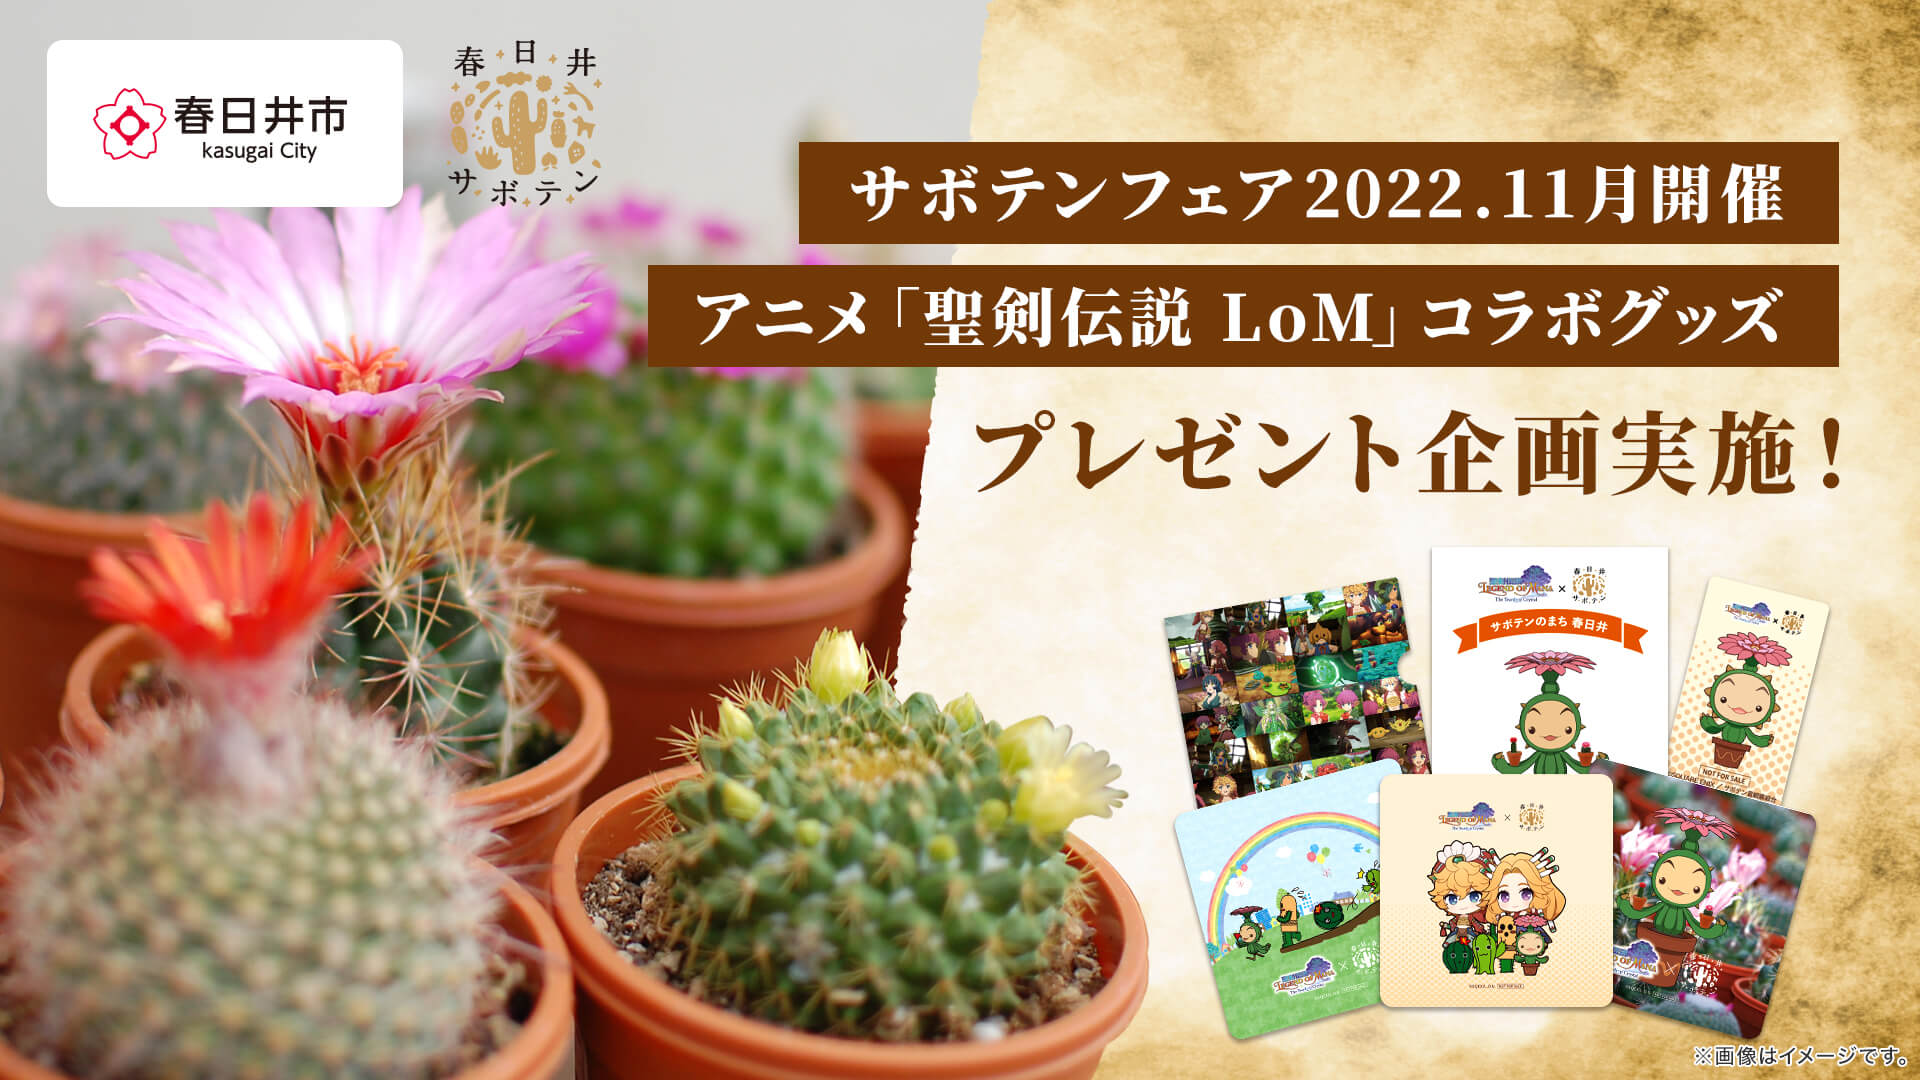 7/15『聖剣伝説 Legend of Mana』Birthday企画「#LoM思い出」ツイートキャンペーン